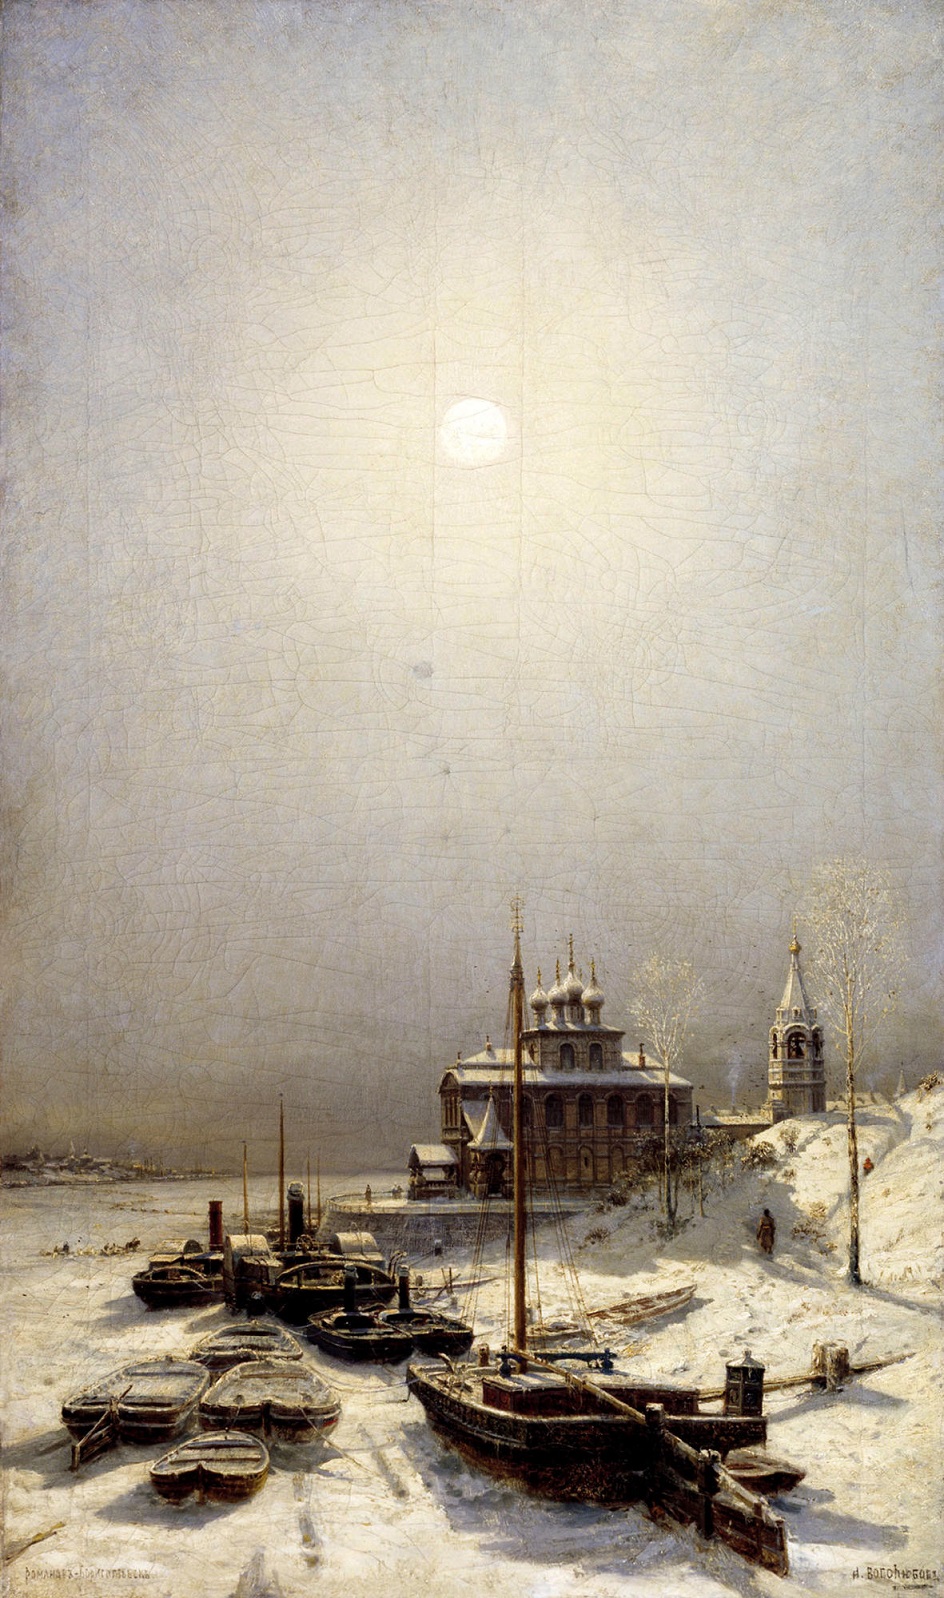 Алексей Боголюбов. Картина «Зима в Борисоглебске»,1881